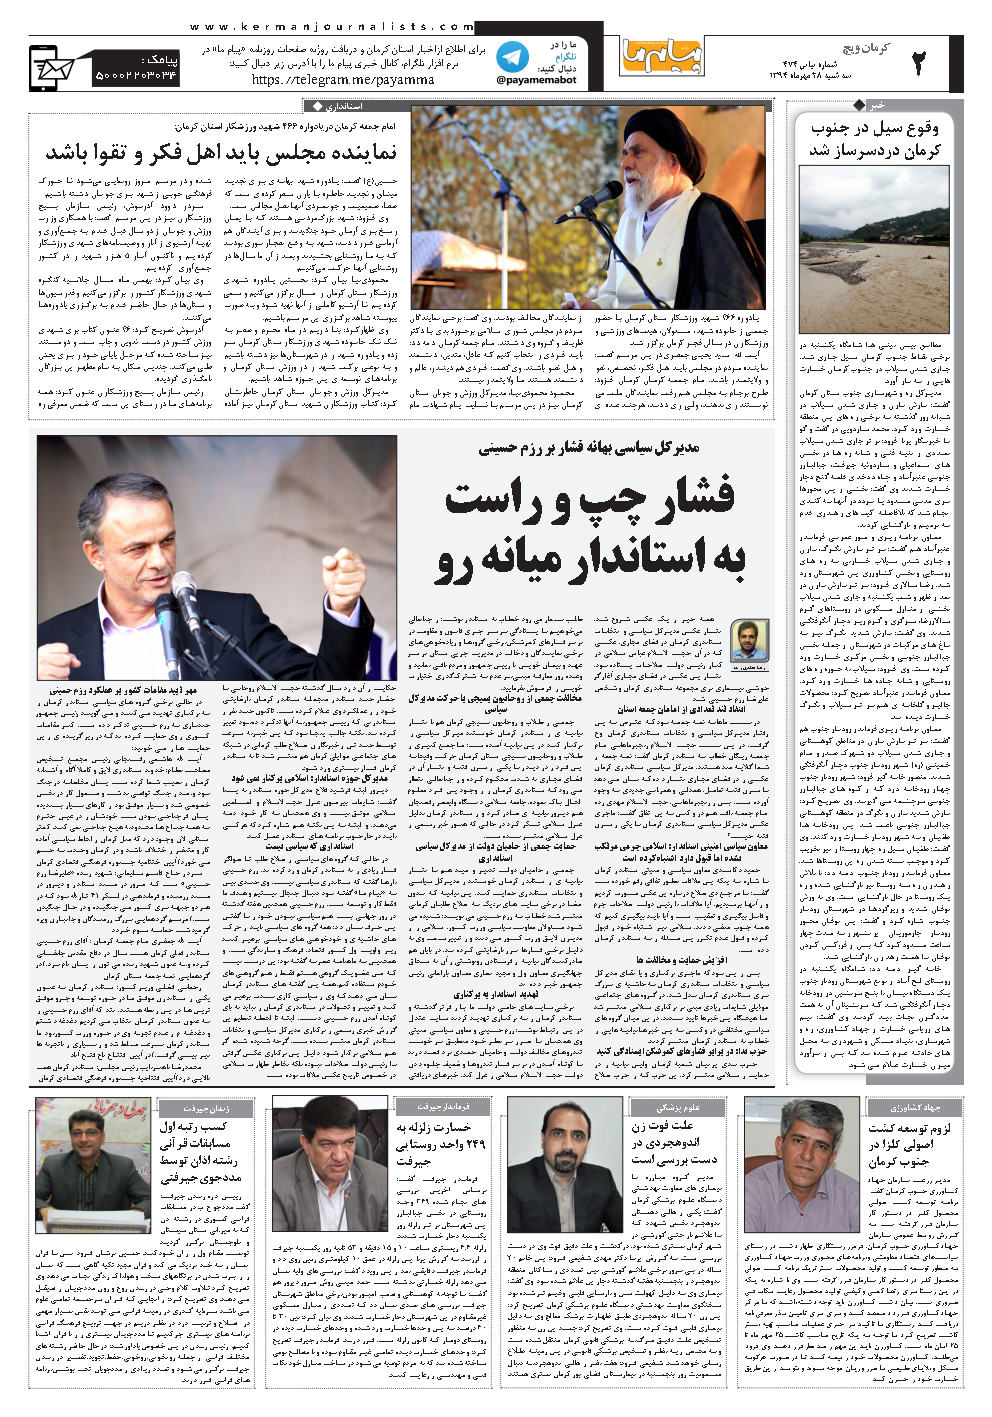 مدیرکل سیاسی بهانه فشار بر رزم حسینی فشار چپ و راست به استاندار میانه رو